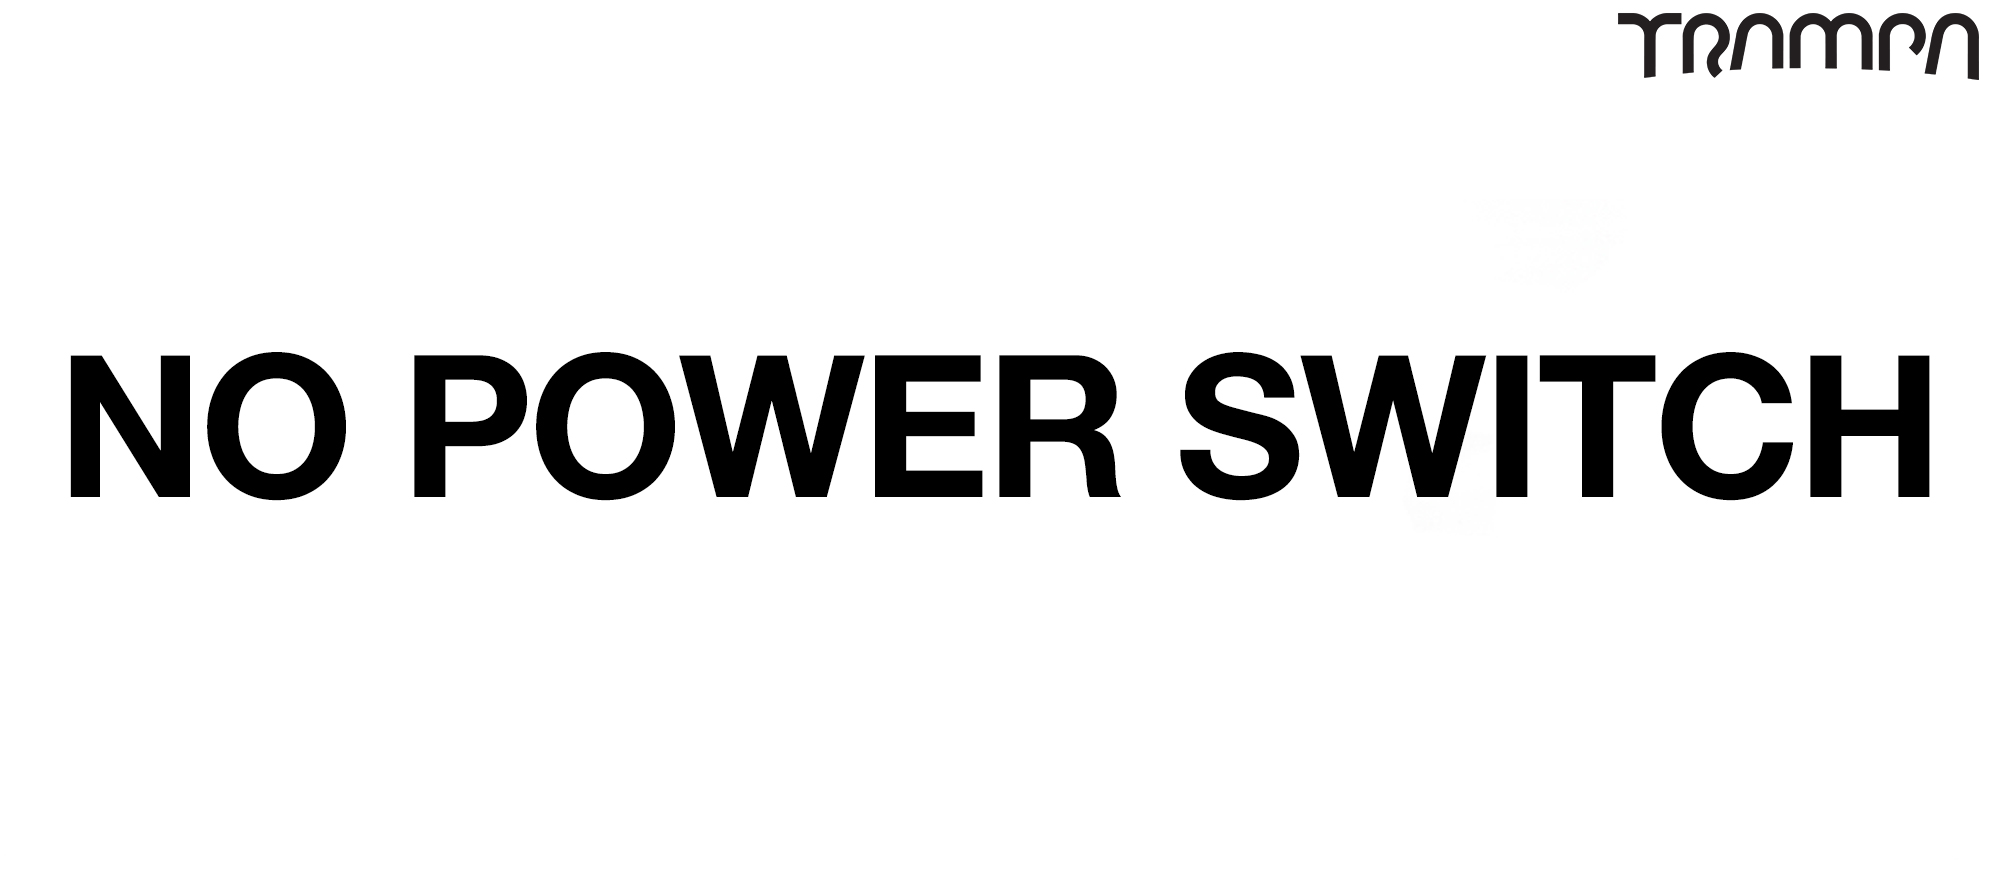 NO POWER SWITCH